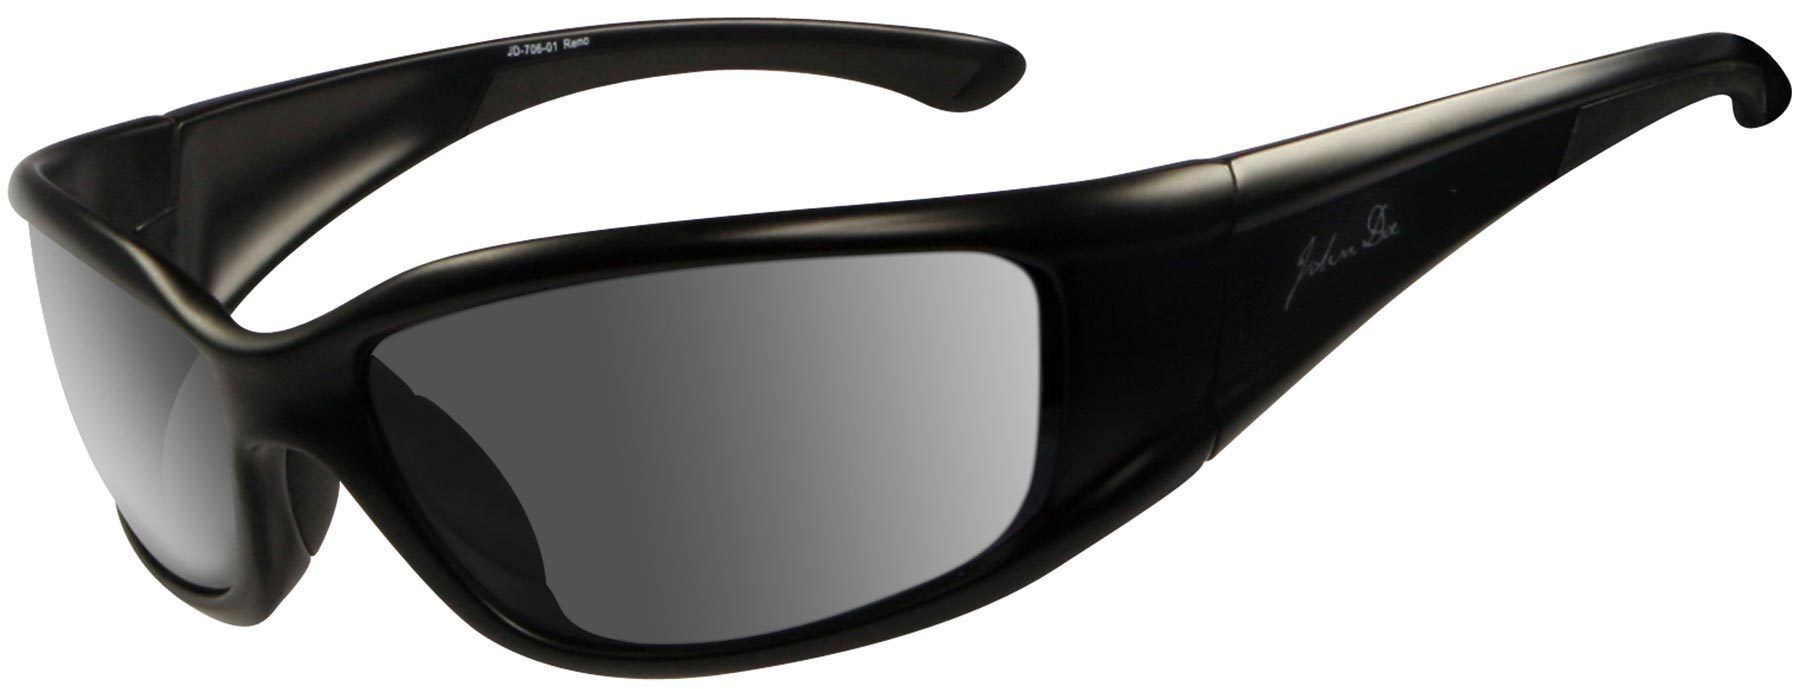 John Doe Reno Gafas de sol - Negro (un tamaño)